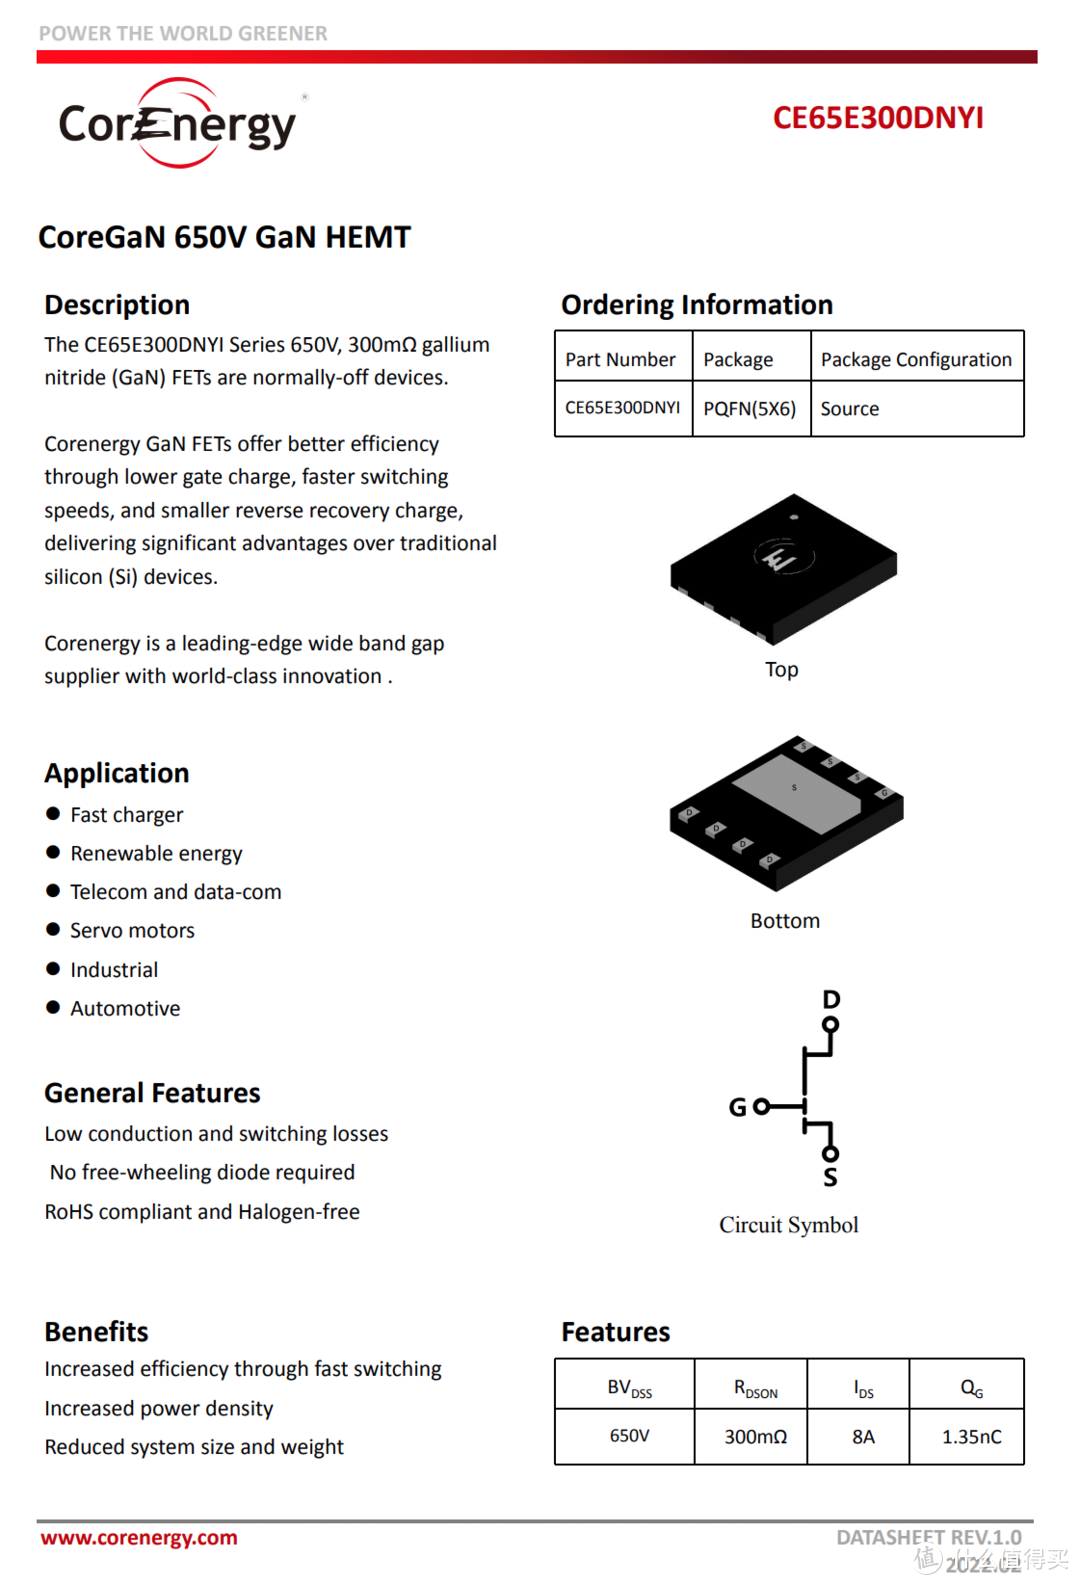 拆解报告：UOCO. 45W双USB-C氮化镓充电器CH45-CC